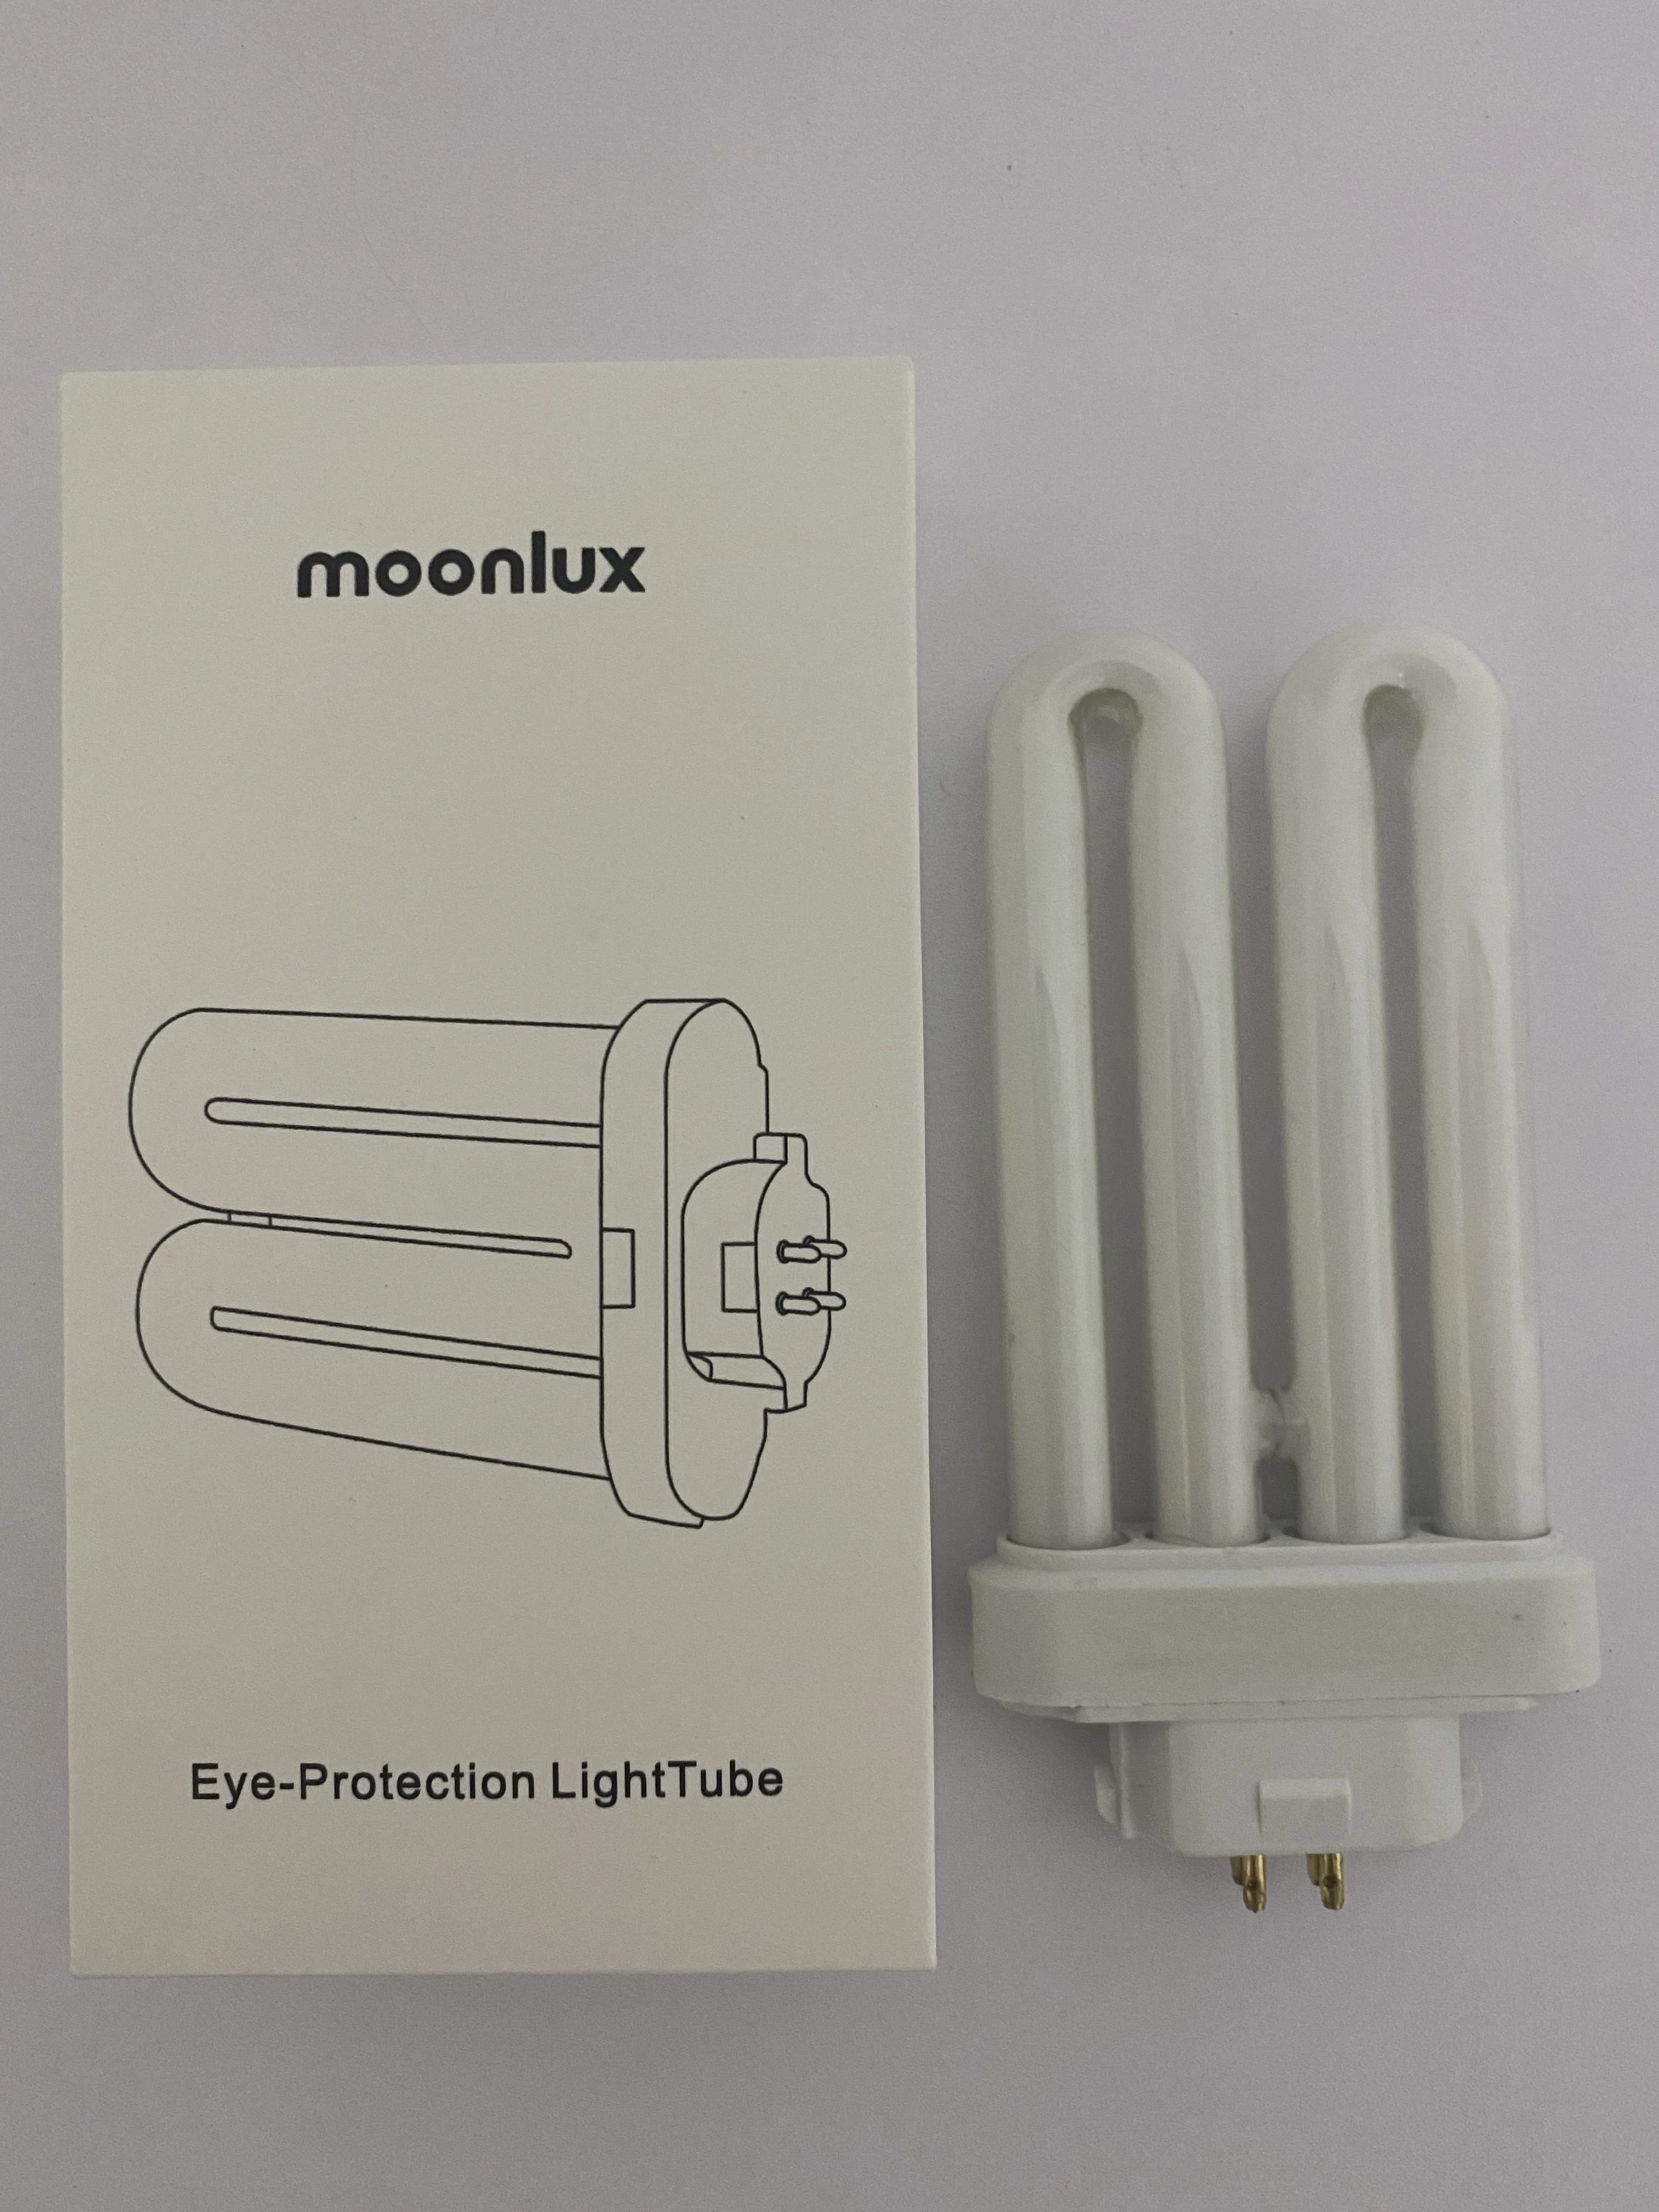 moonlux AC220V-240V Four Pins G10q Fluorescent Light Tube 15W Square Needles Eye-Protection LightTubes